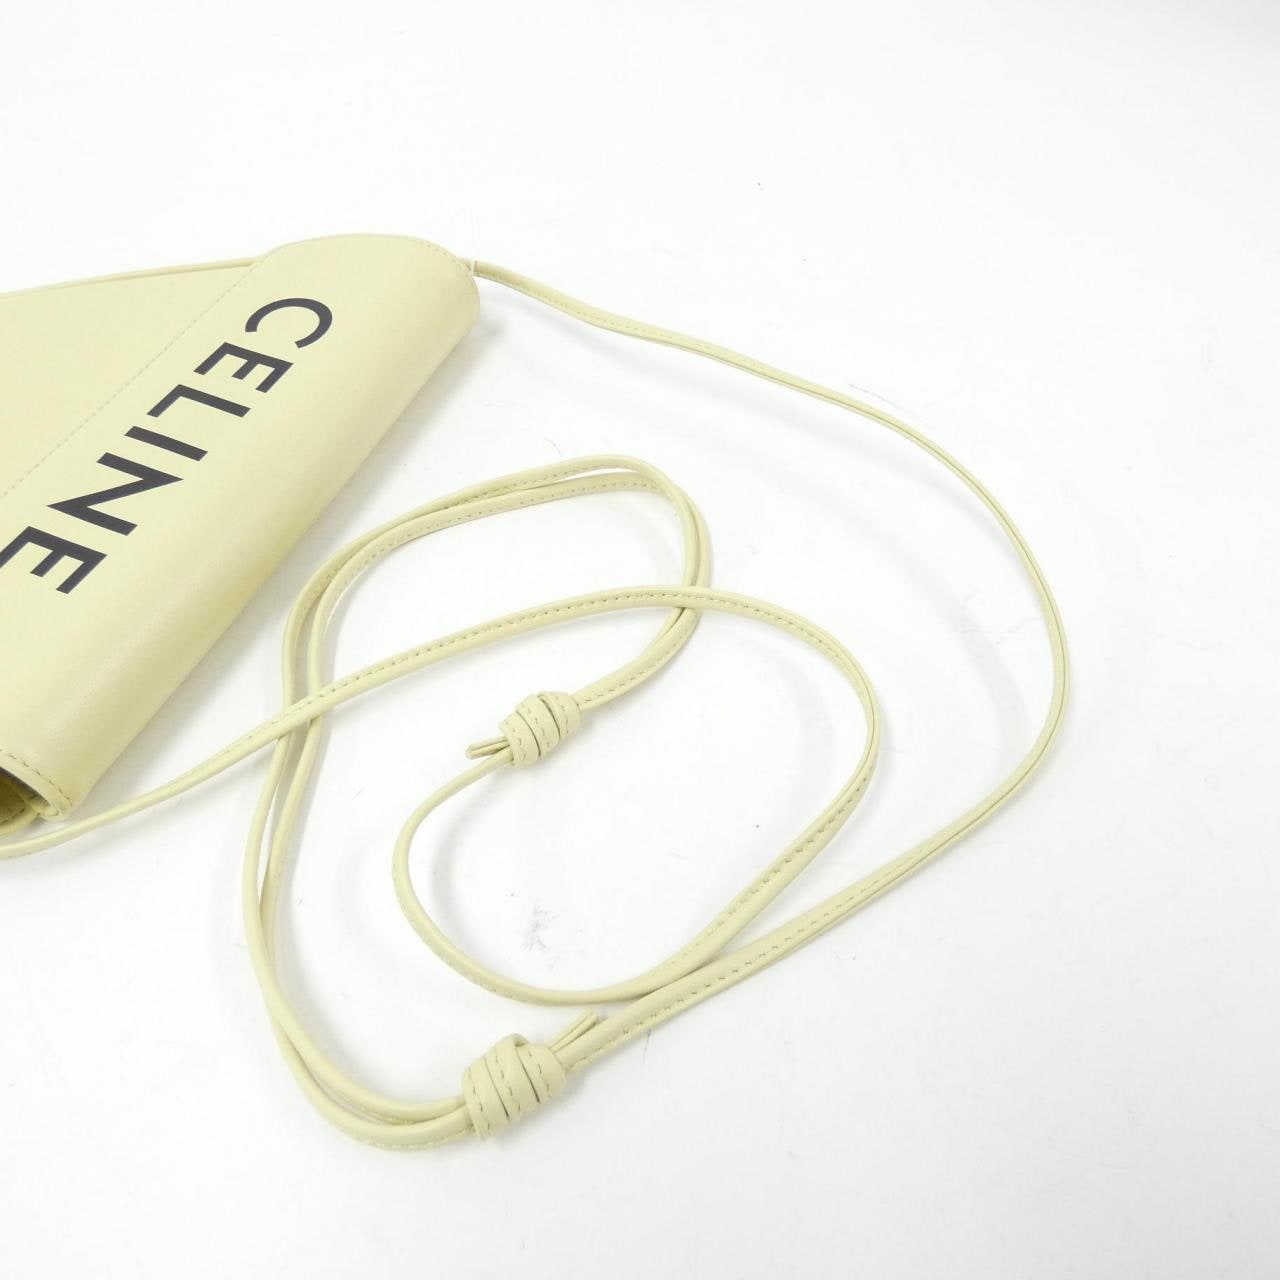 [BRAND NEW] CELINE Triangle Bag 195903DCS Shoulder Bag